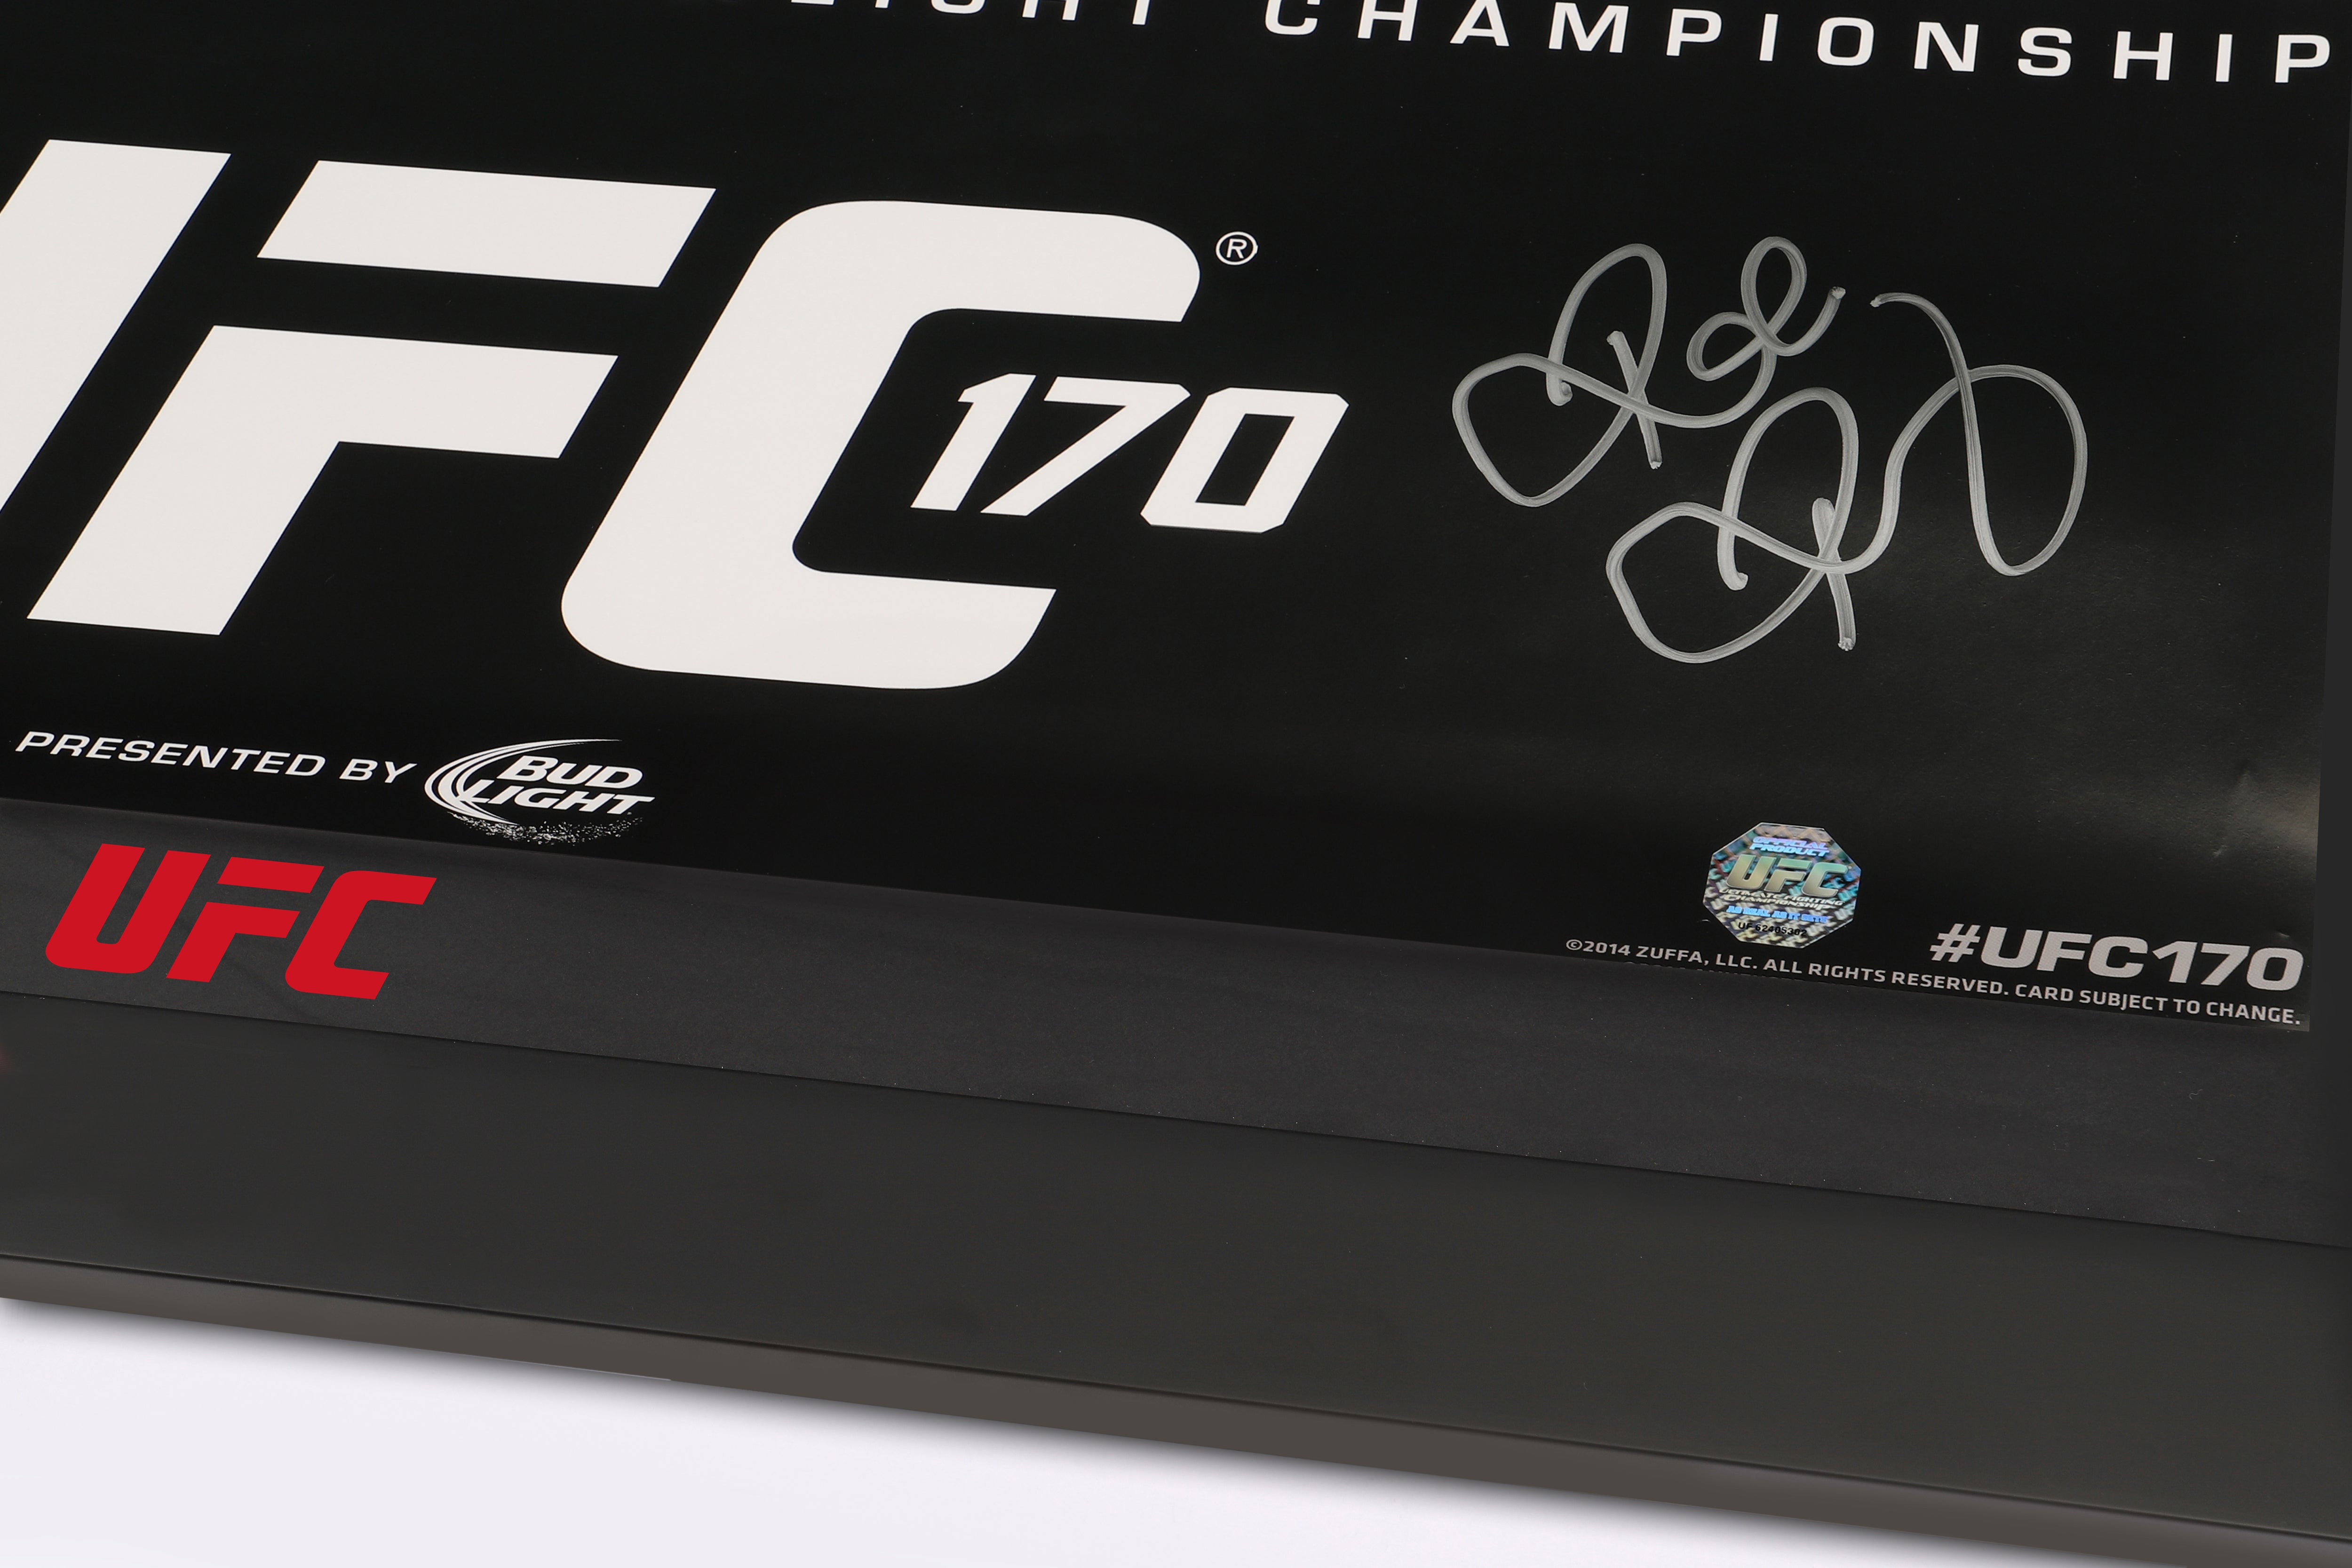 UFC 170: Rousey vs McMann Autographed Event Poster